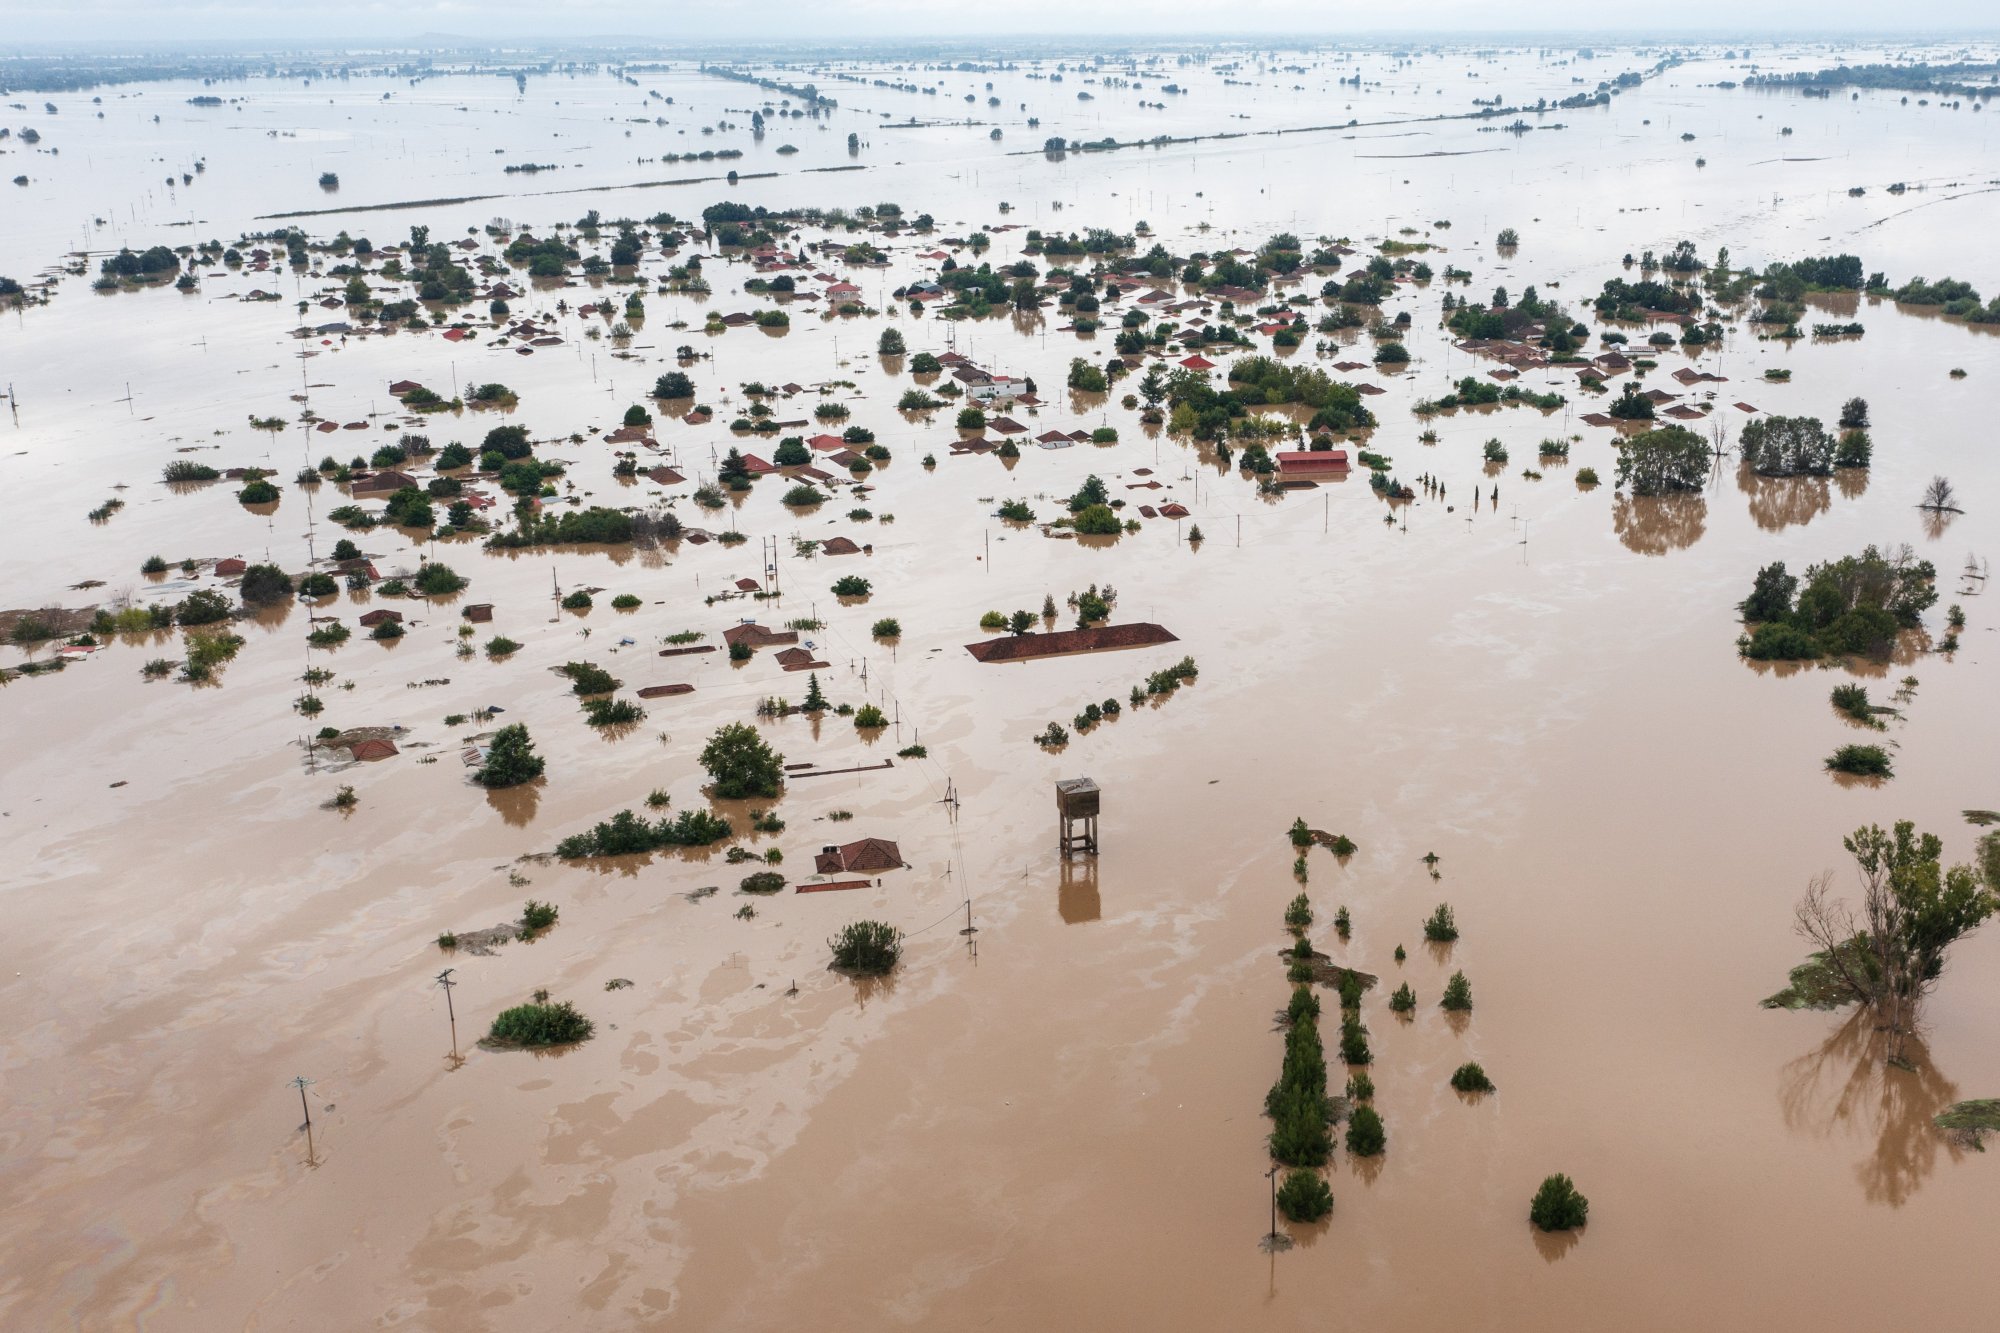 Κακοκαιρία Daniel: Παραμένουν πρώτο θέμα στον διεθνή Τύπο οι πλημμύρες στην Ελλάδα